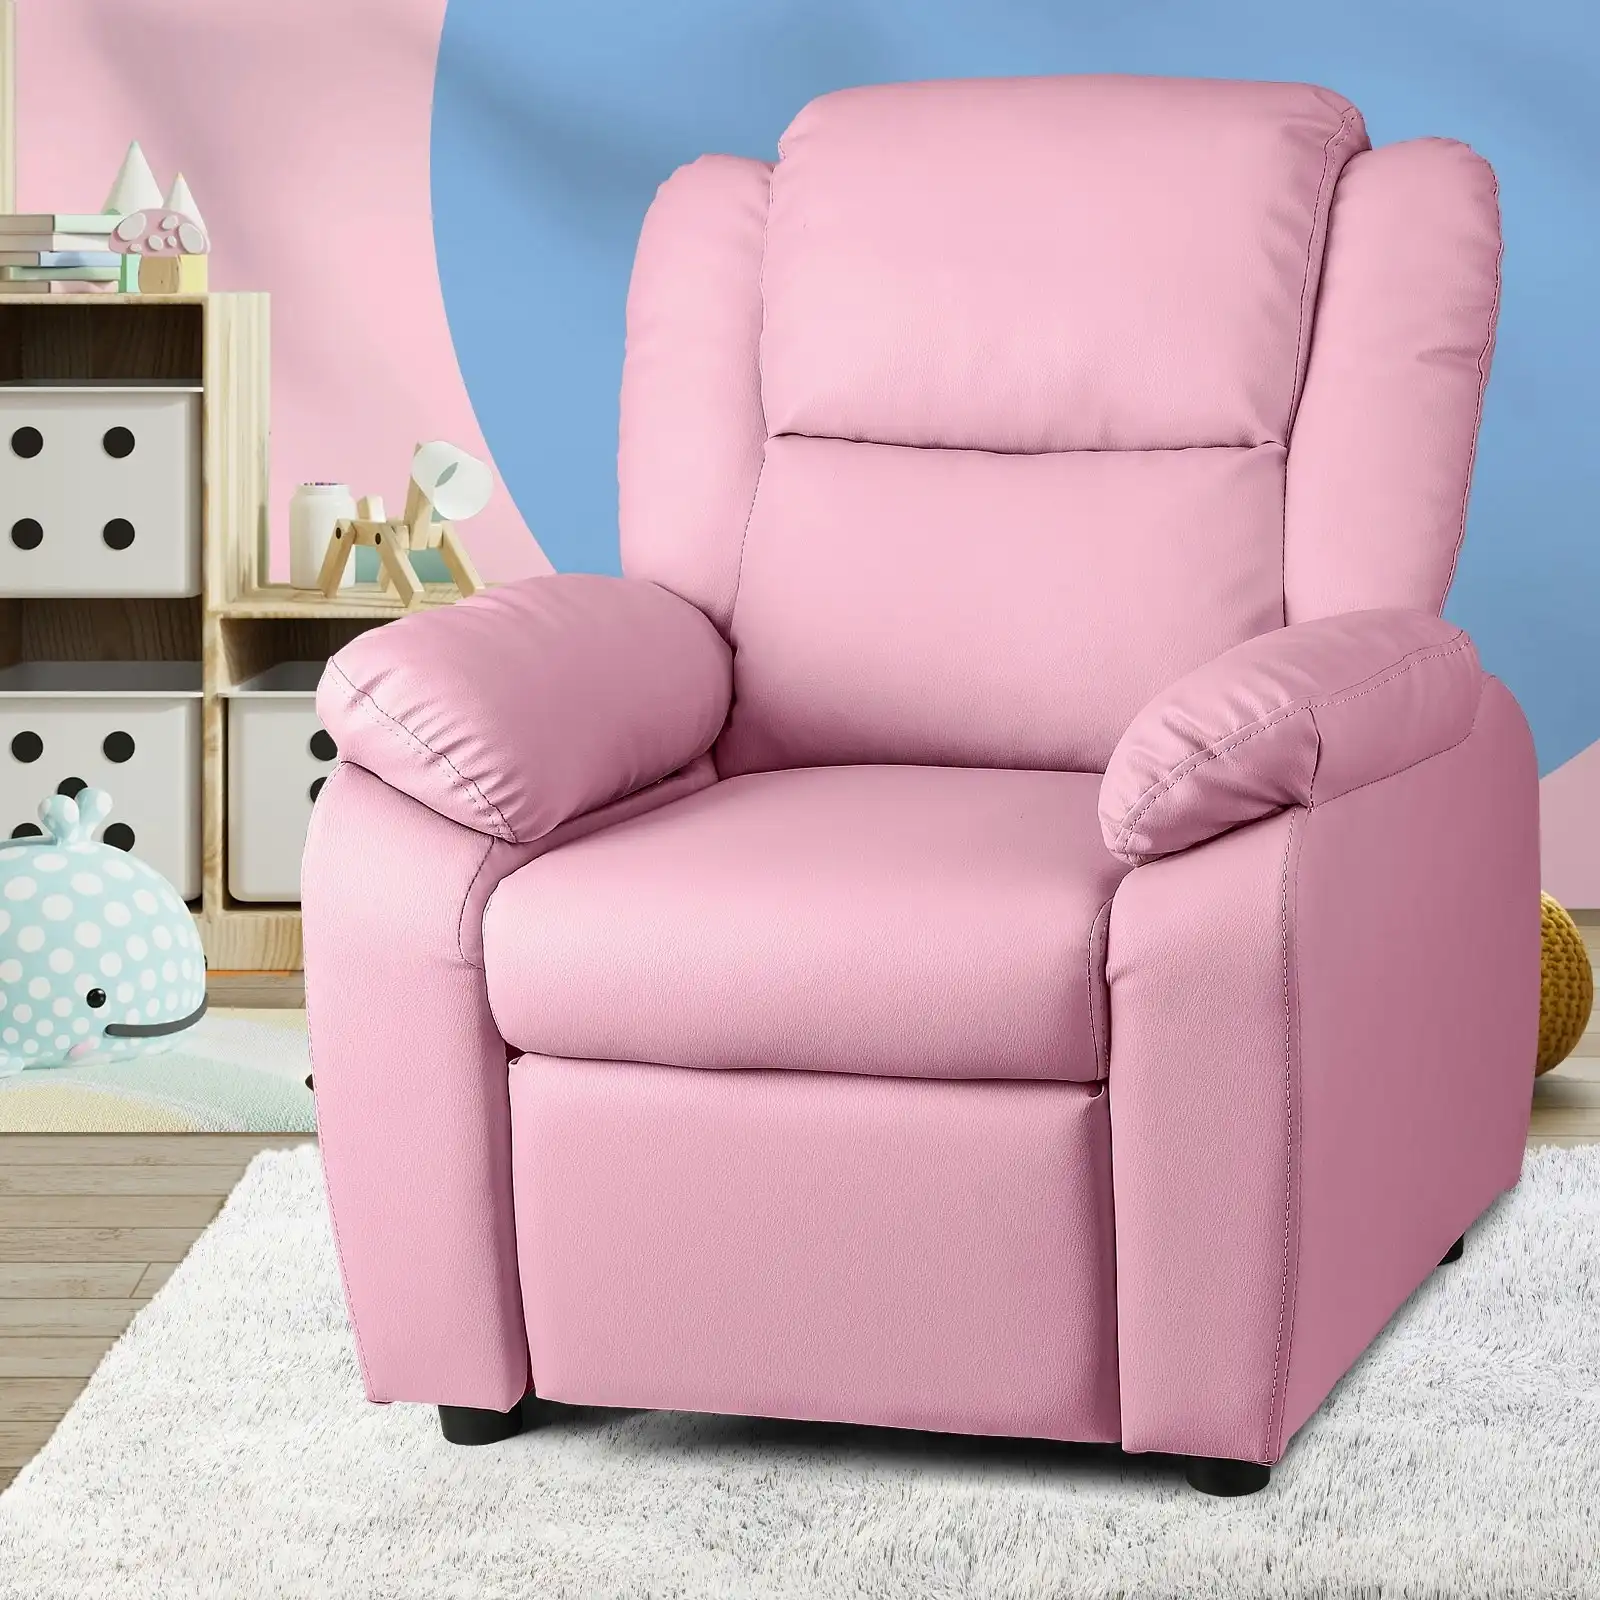 Oikiture Kids Recliner Chairs Children Lounge Sofa PU Armchair w/ Hidden Storage